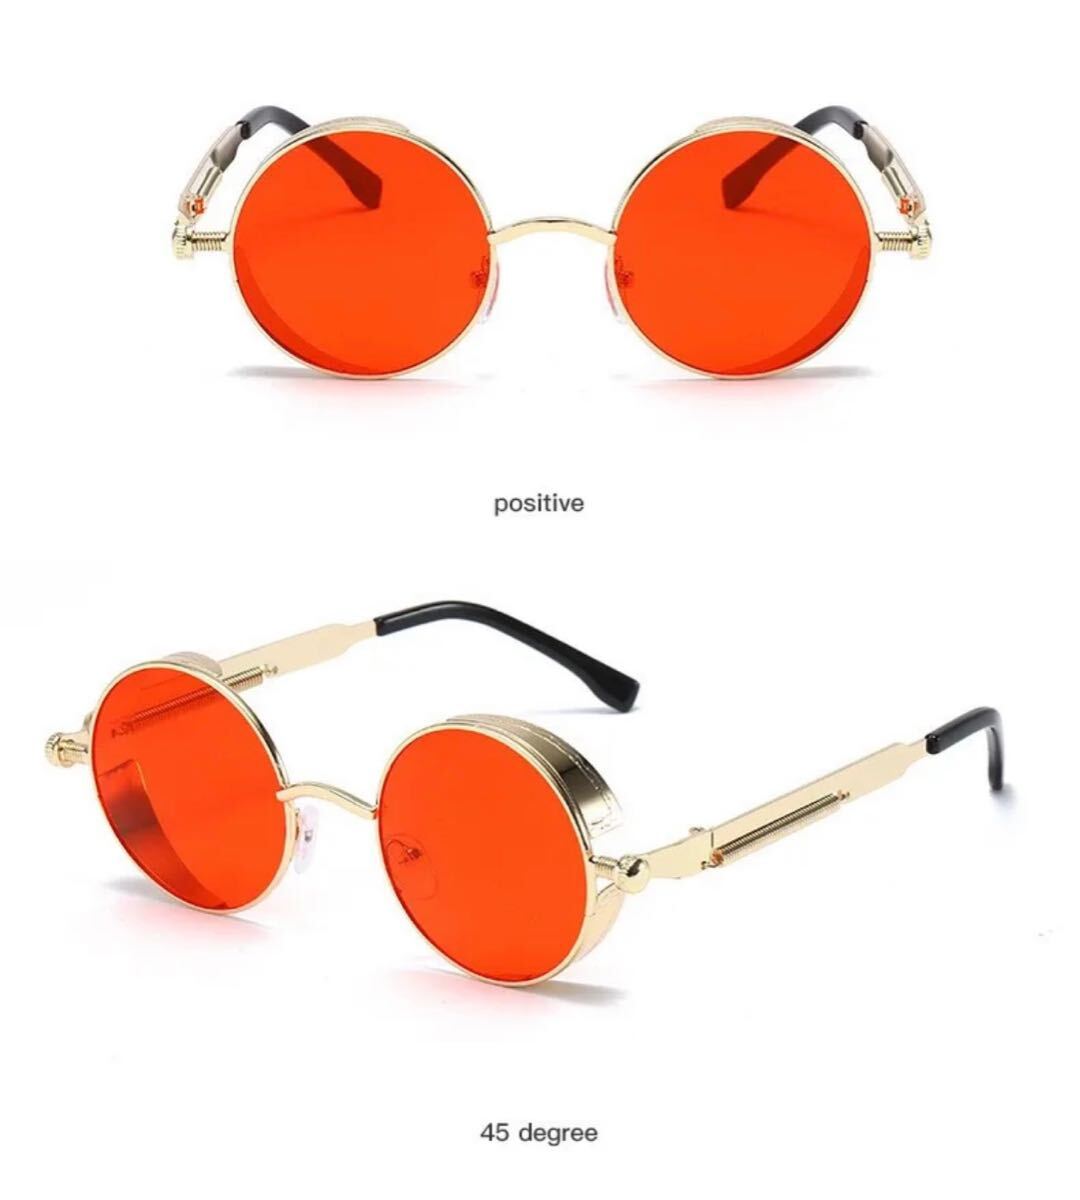 メタルパンクサングラス メガネ 眼鏡 ユニセックス ファッション サングラス メタル パンク スチームパンク 丸眼鏡 丸メガネ 赤金 2844_画像2